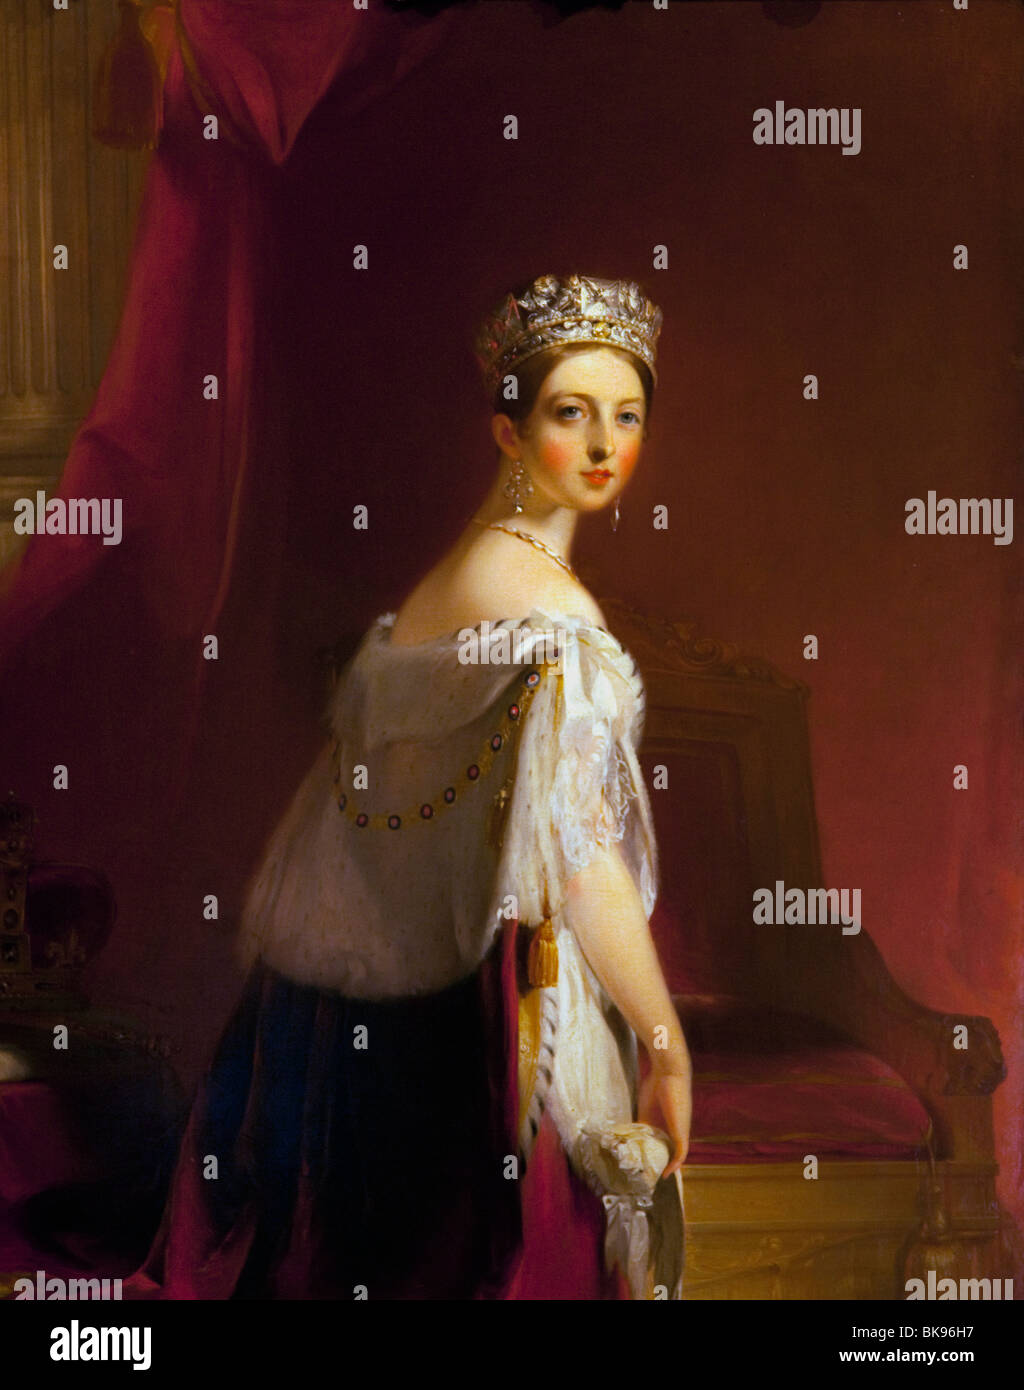 La reina Victoria por Thomas Sully, 1838 Colección Wallace, Londres, Reino Unido. Foto de stock